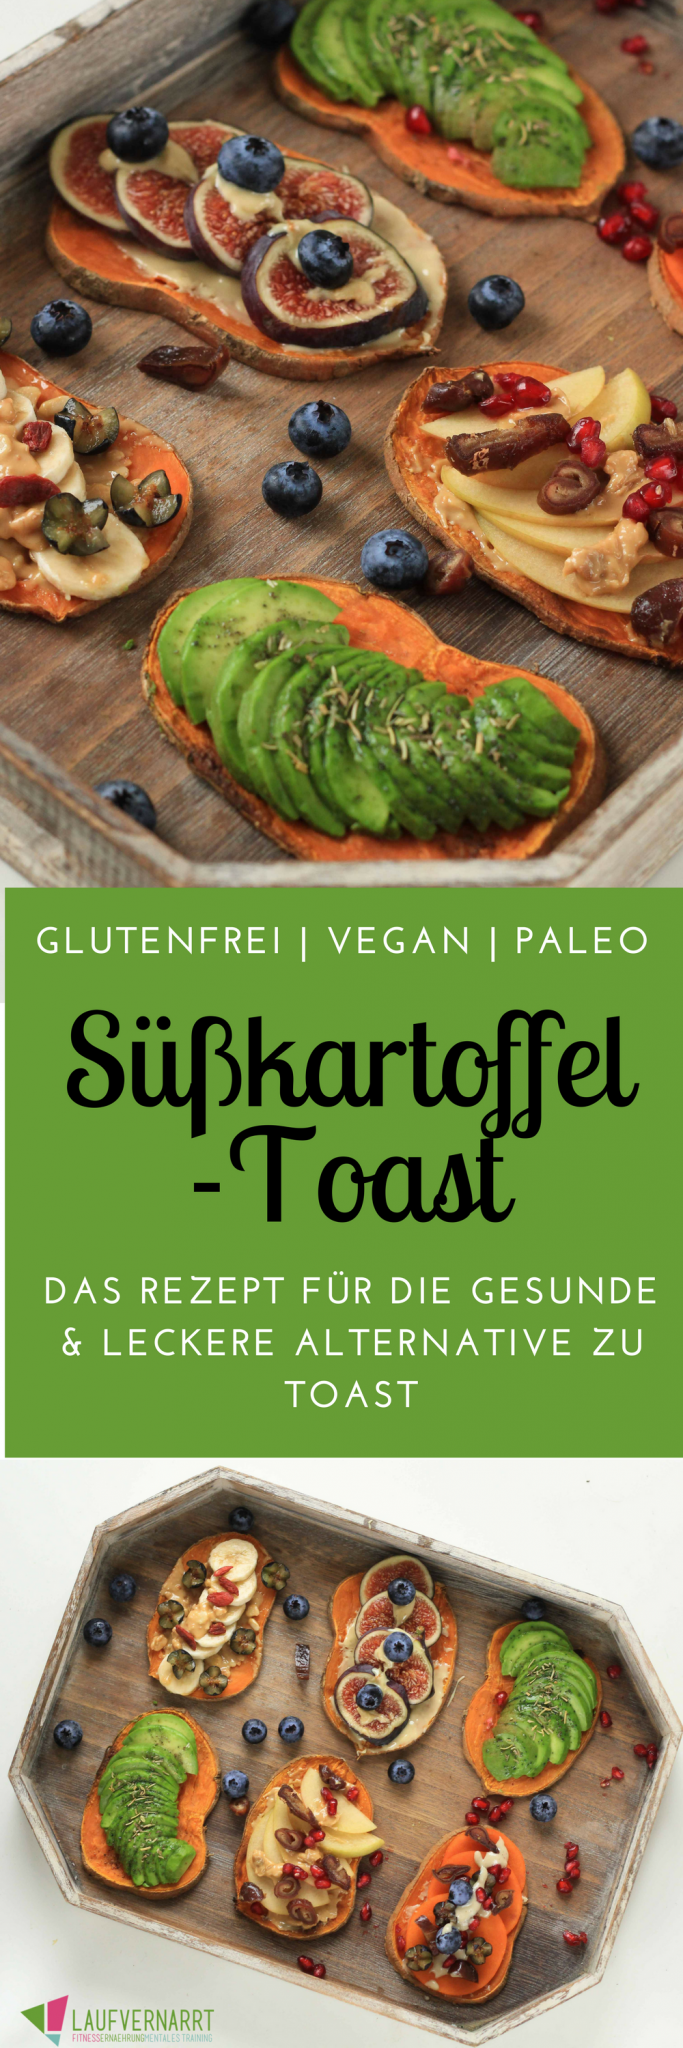 S??kartoffel-Toast - die gesunde und glutenfreie Alternative zu Toast -   25 fitness rezepte fleisch
 ideas